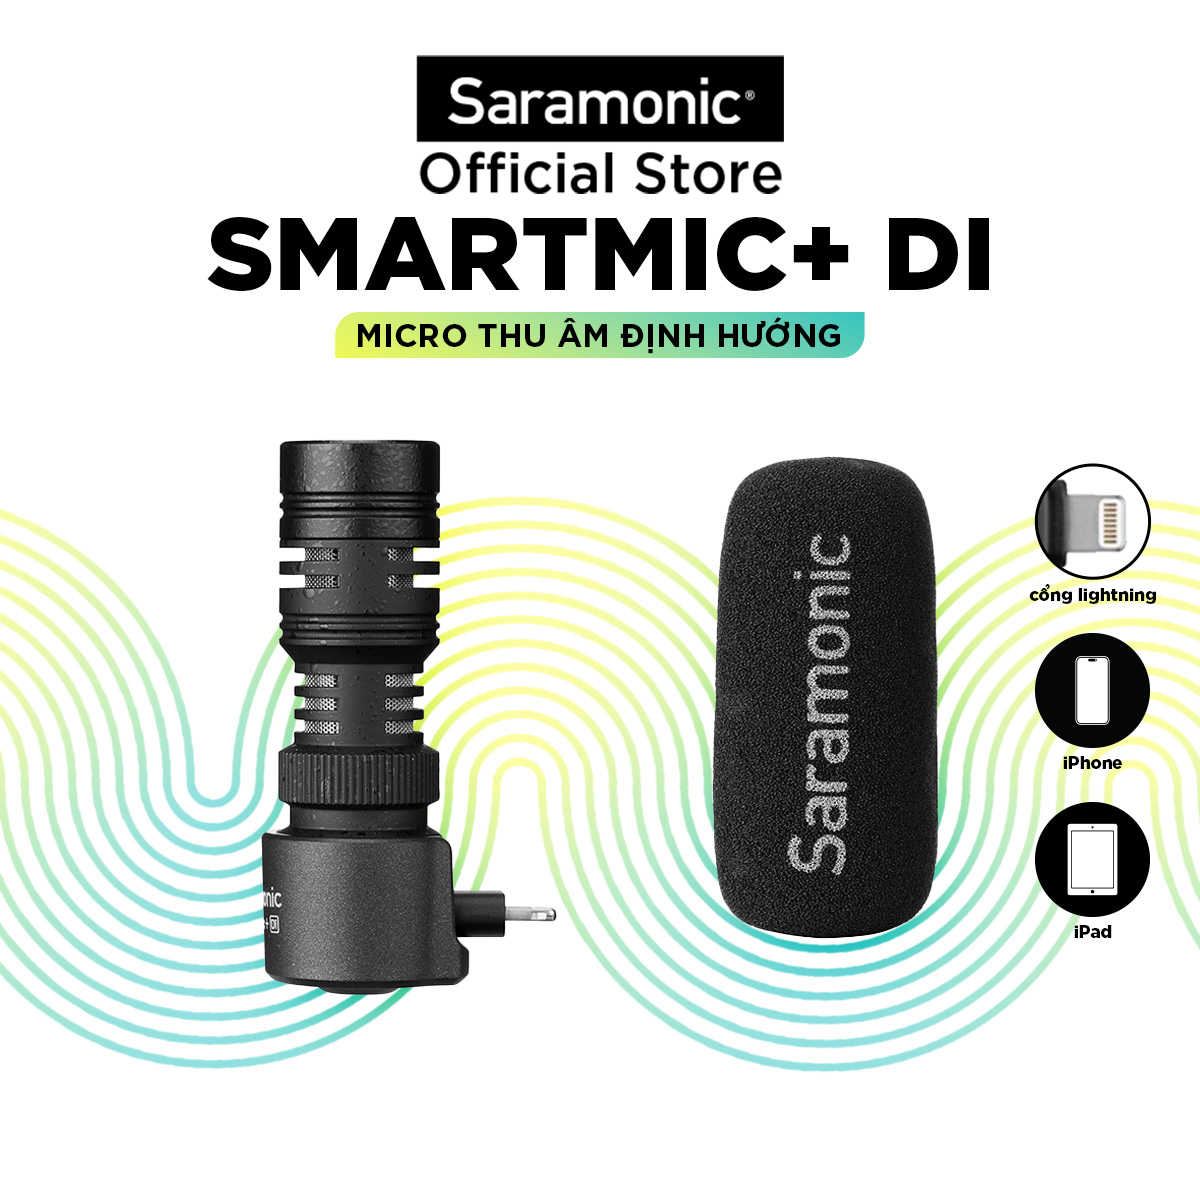 Micro Thu Âm Không Dây Saramonic Smartmic+ Di - Kết Nối Điện Thoại Iphone / Thiết bị IOS - Livestream/ Phỏng Vấn/ Quay Video/ Podcast - Hàng Chính Hãng